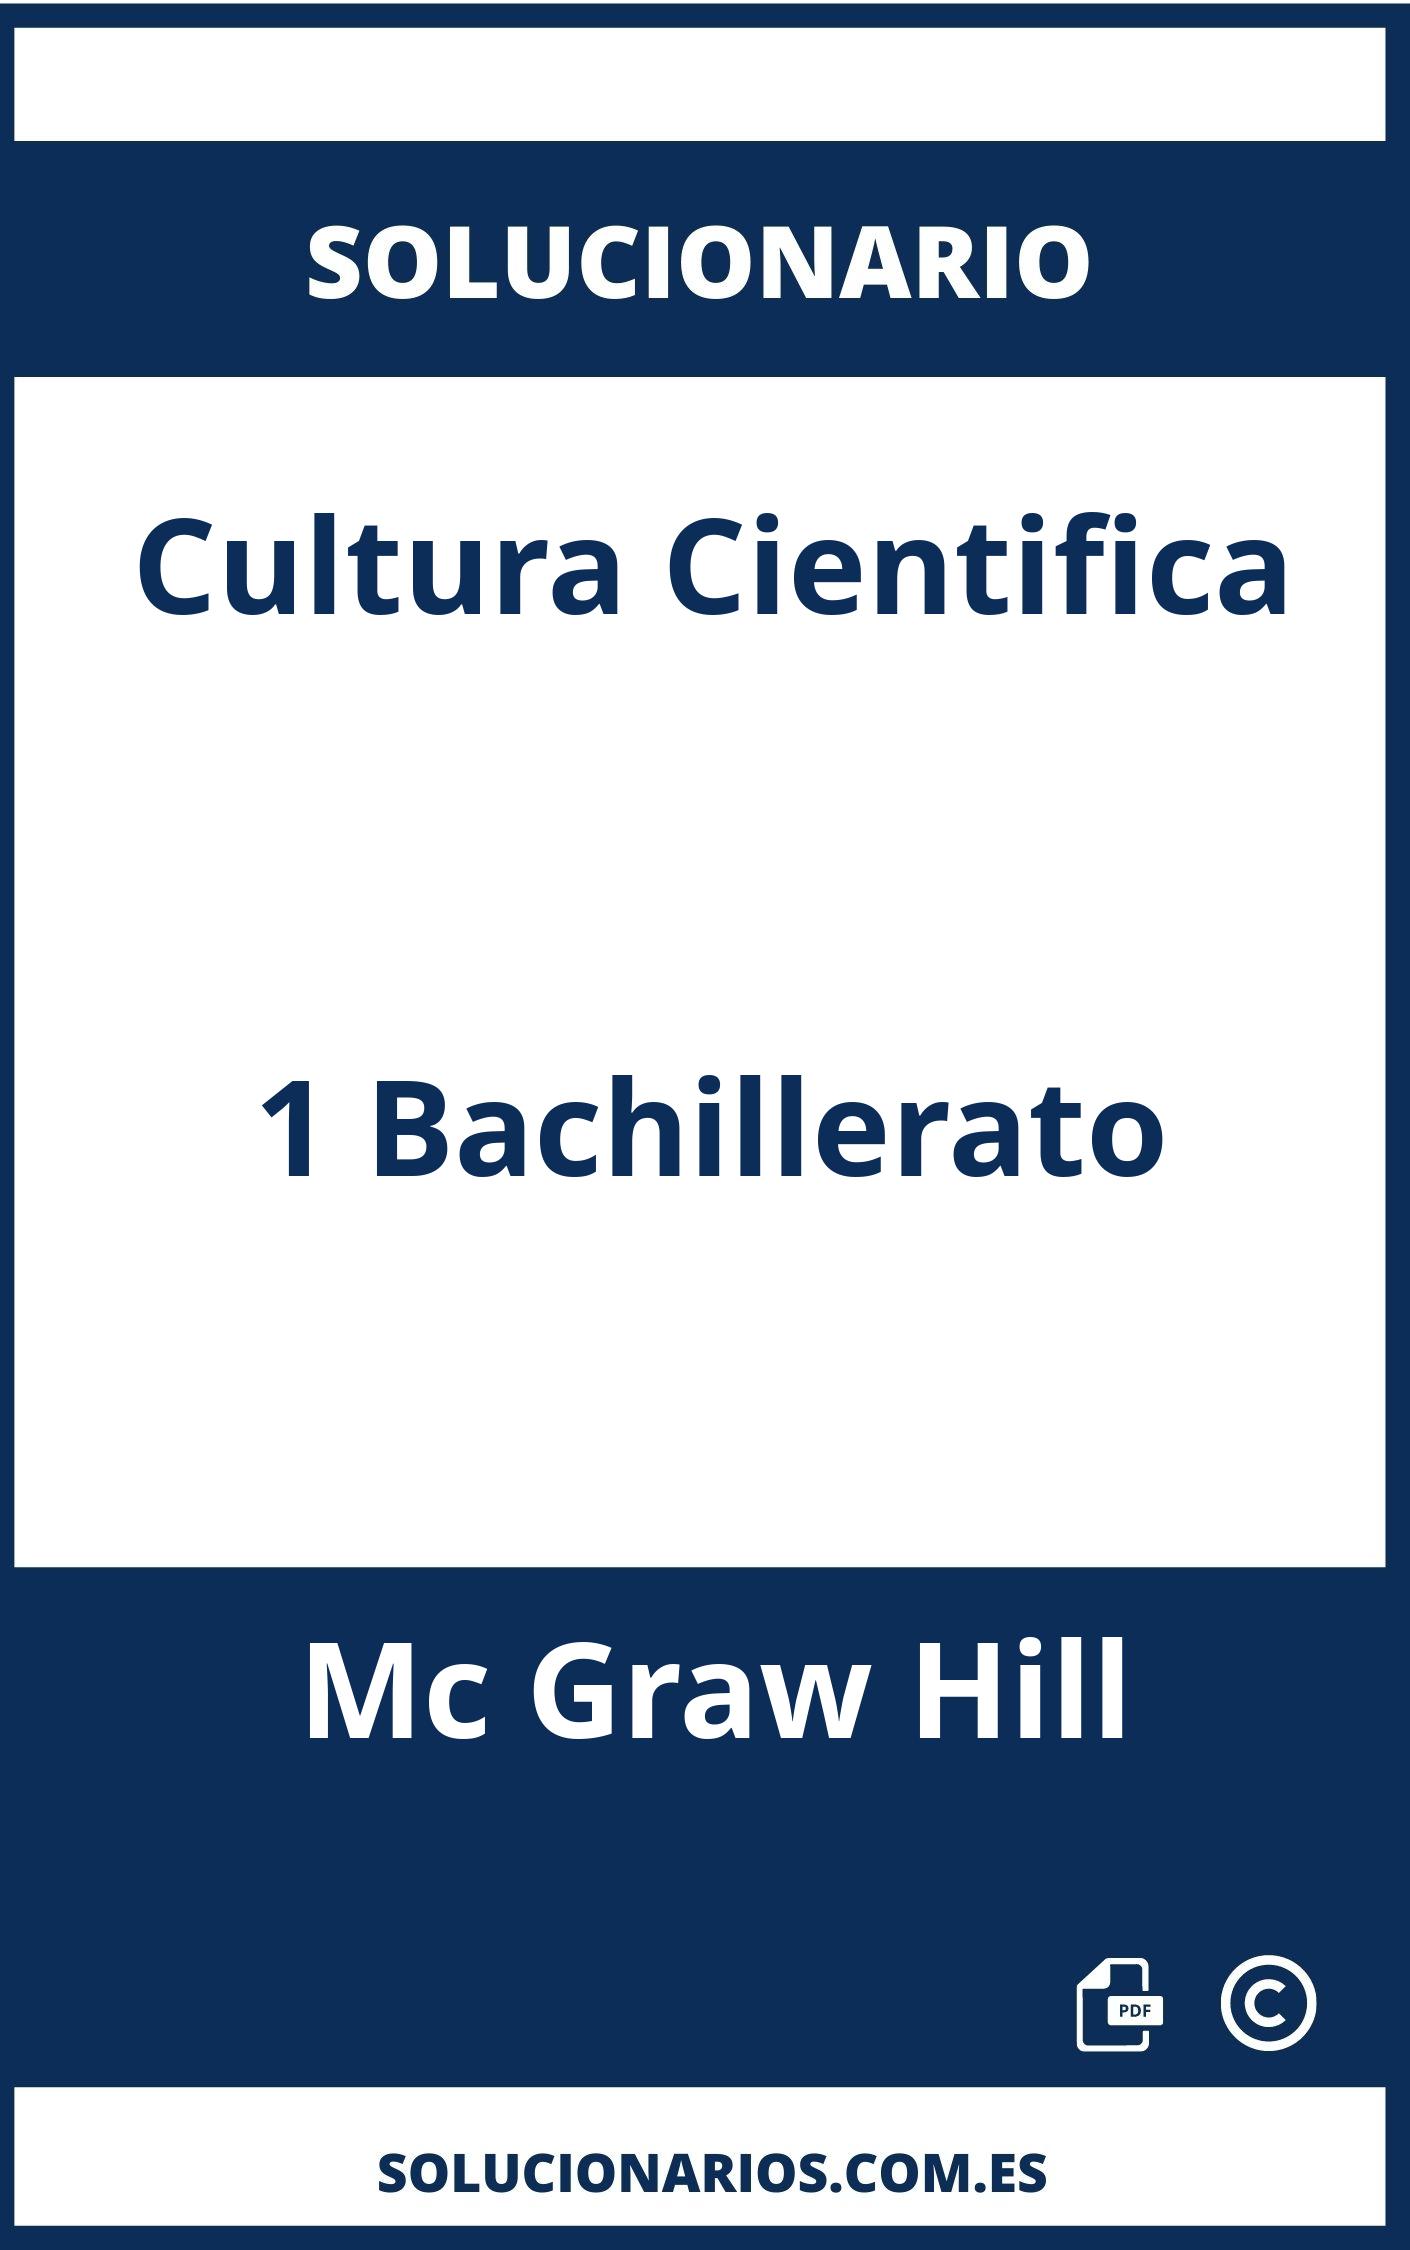 Solucionario Cultura Cientifica 1 Bachillerato Mc Graw Hill